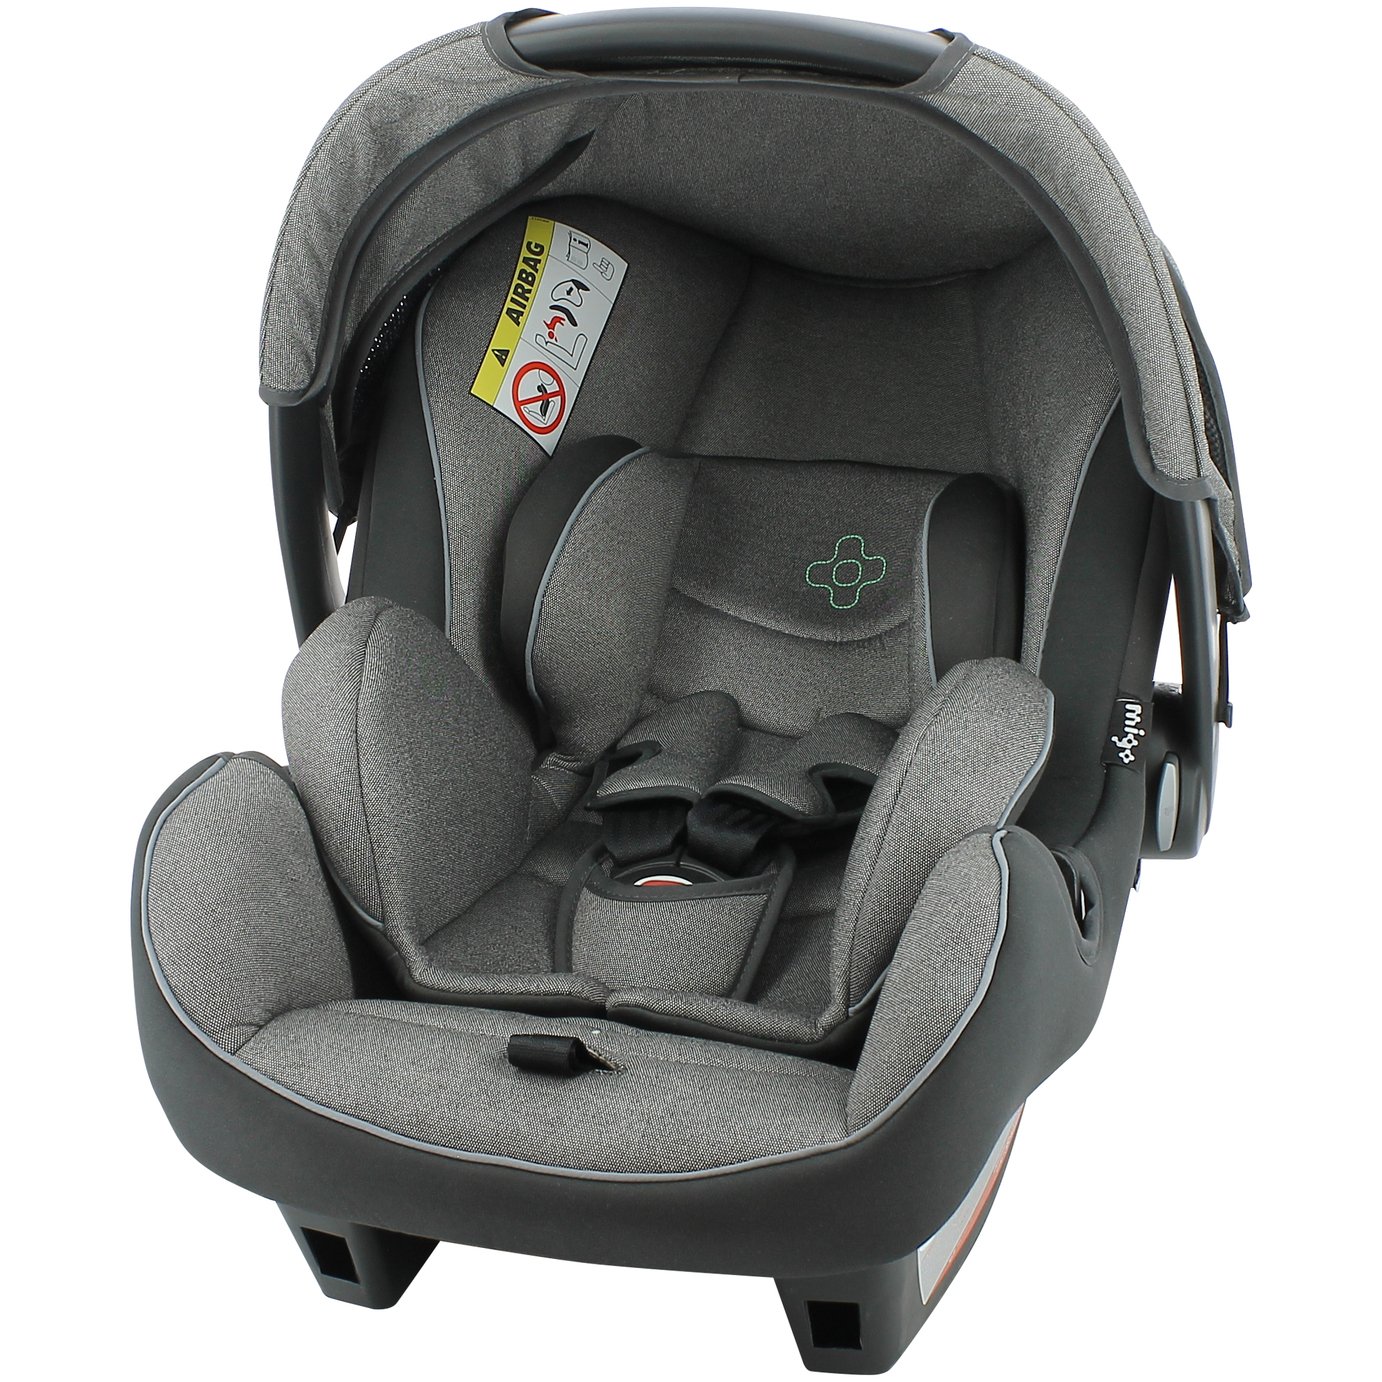 Migo Beone Platinum Group 0+ Baby Car Seat Review